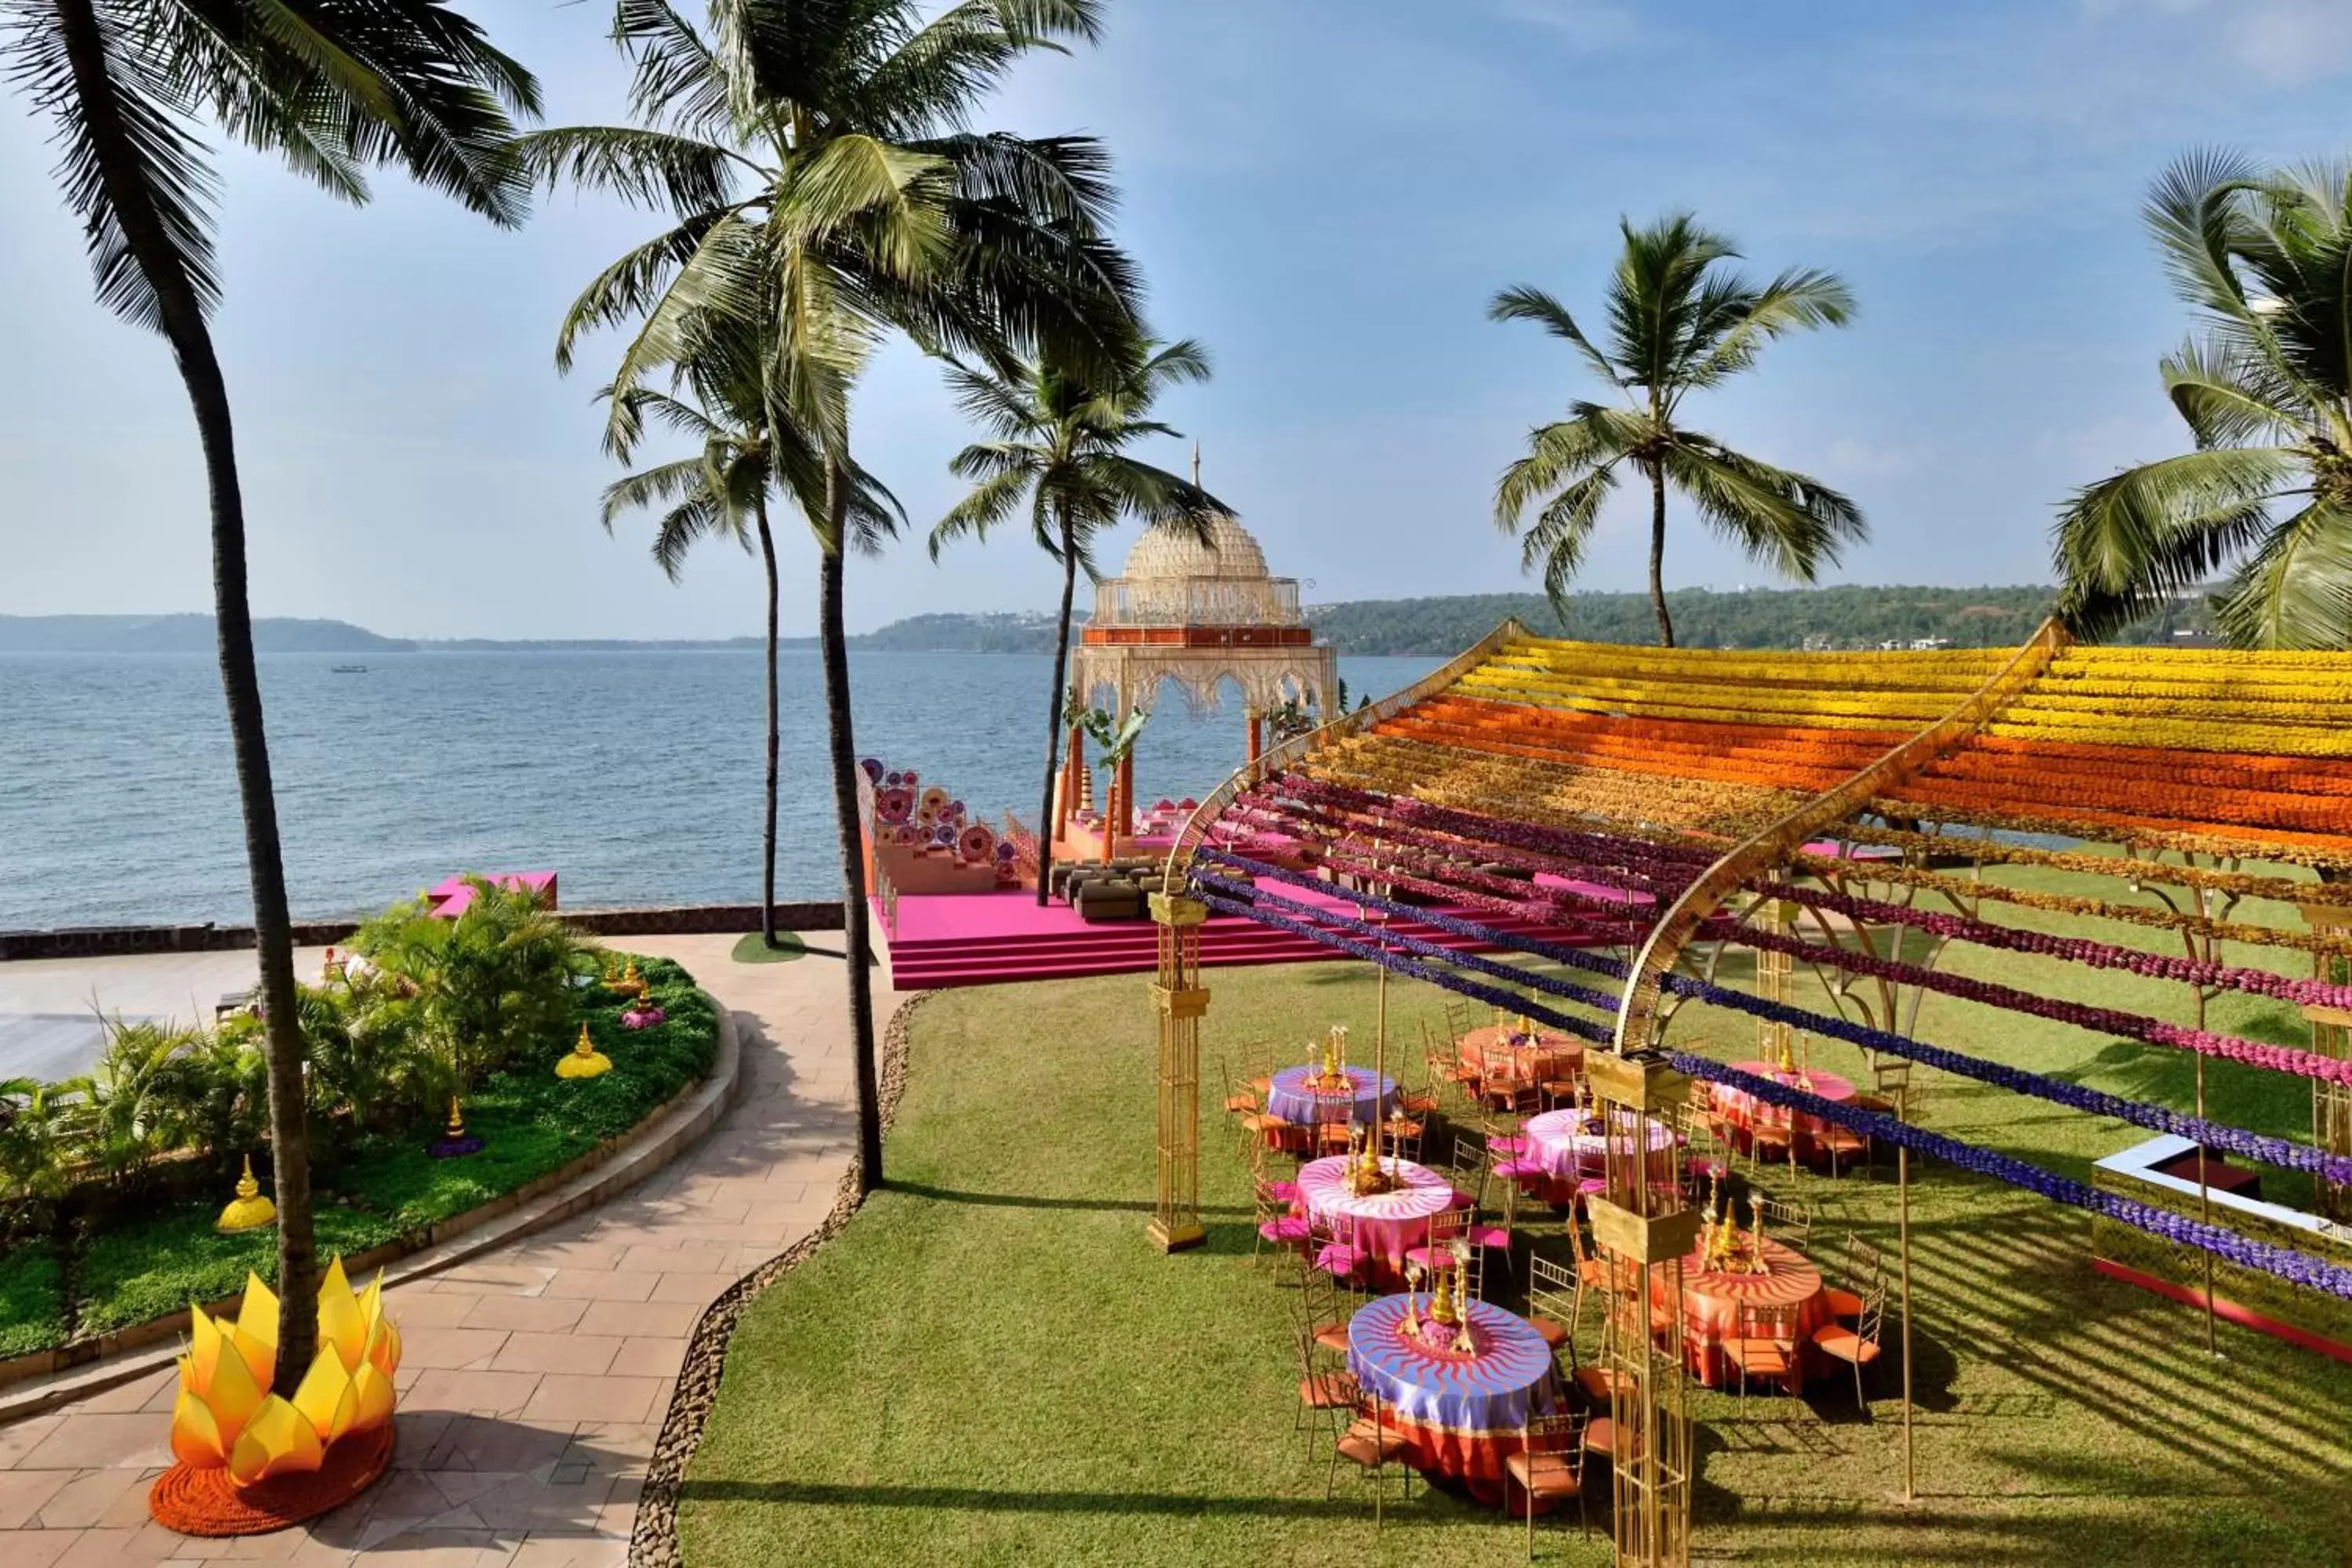 Banquet/Function facilities in Goa Marriott Resort & Spa